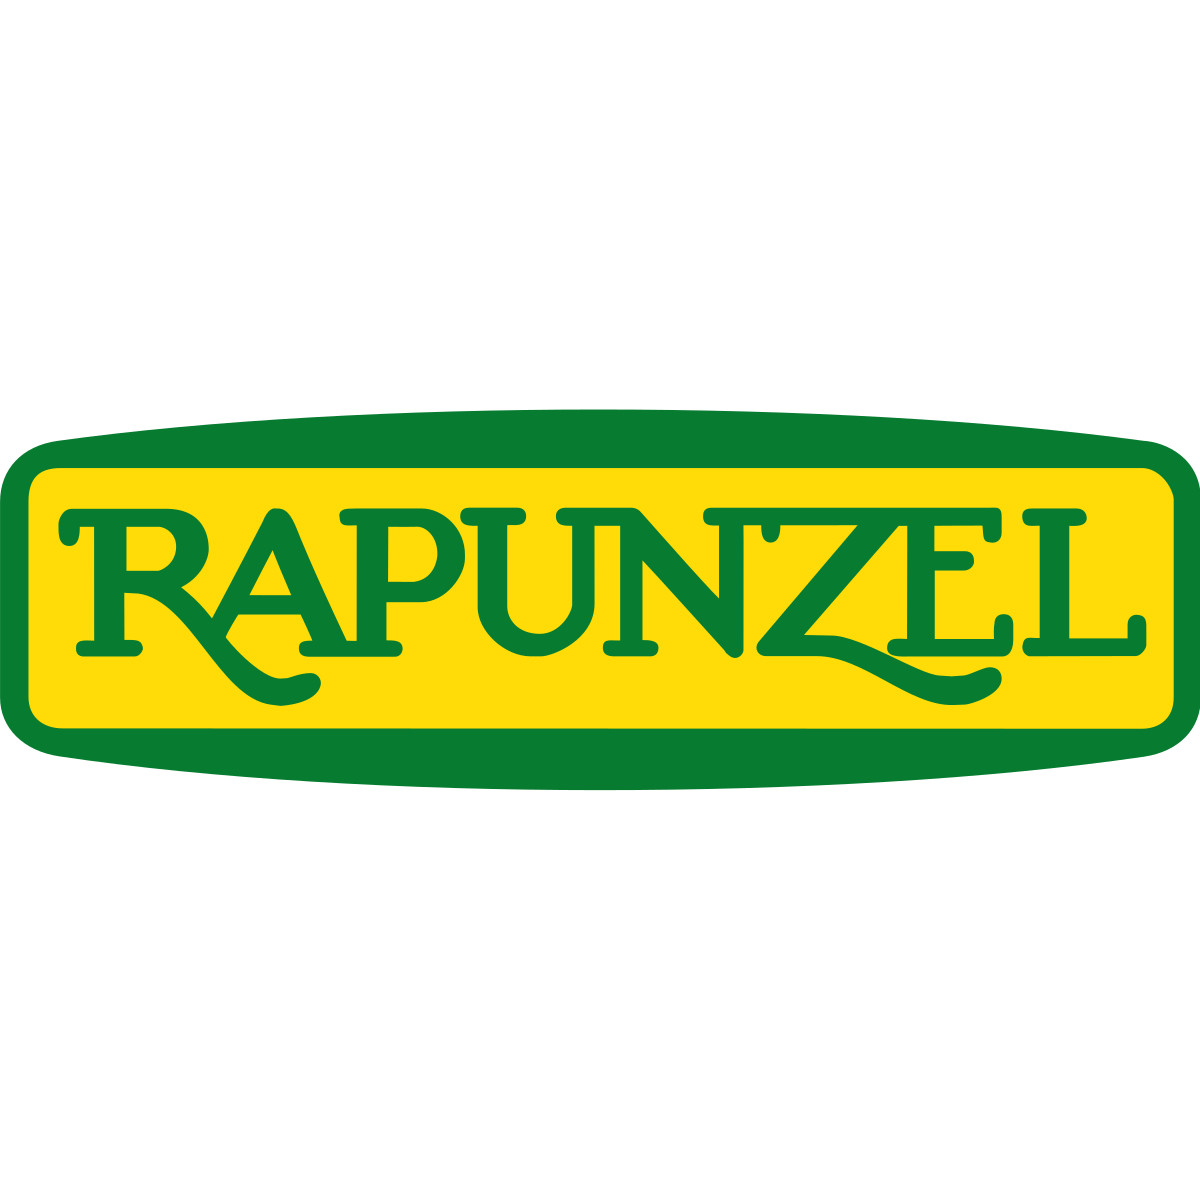  Rapunzel Naturkost - BIO-Vielfalt seit 1976...